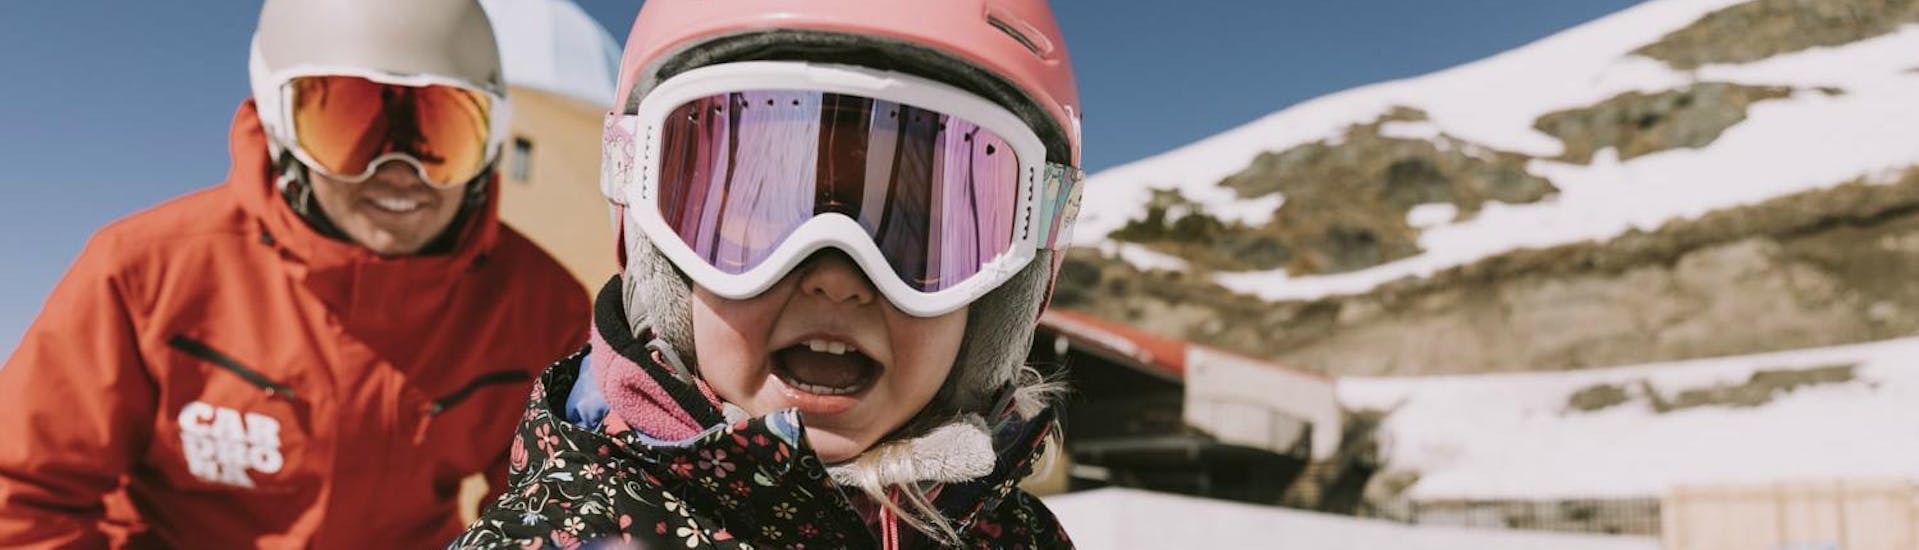 Lezioni di sci per bambini a partire da 3 anni per tutti i livelli.